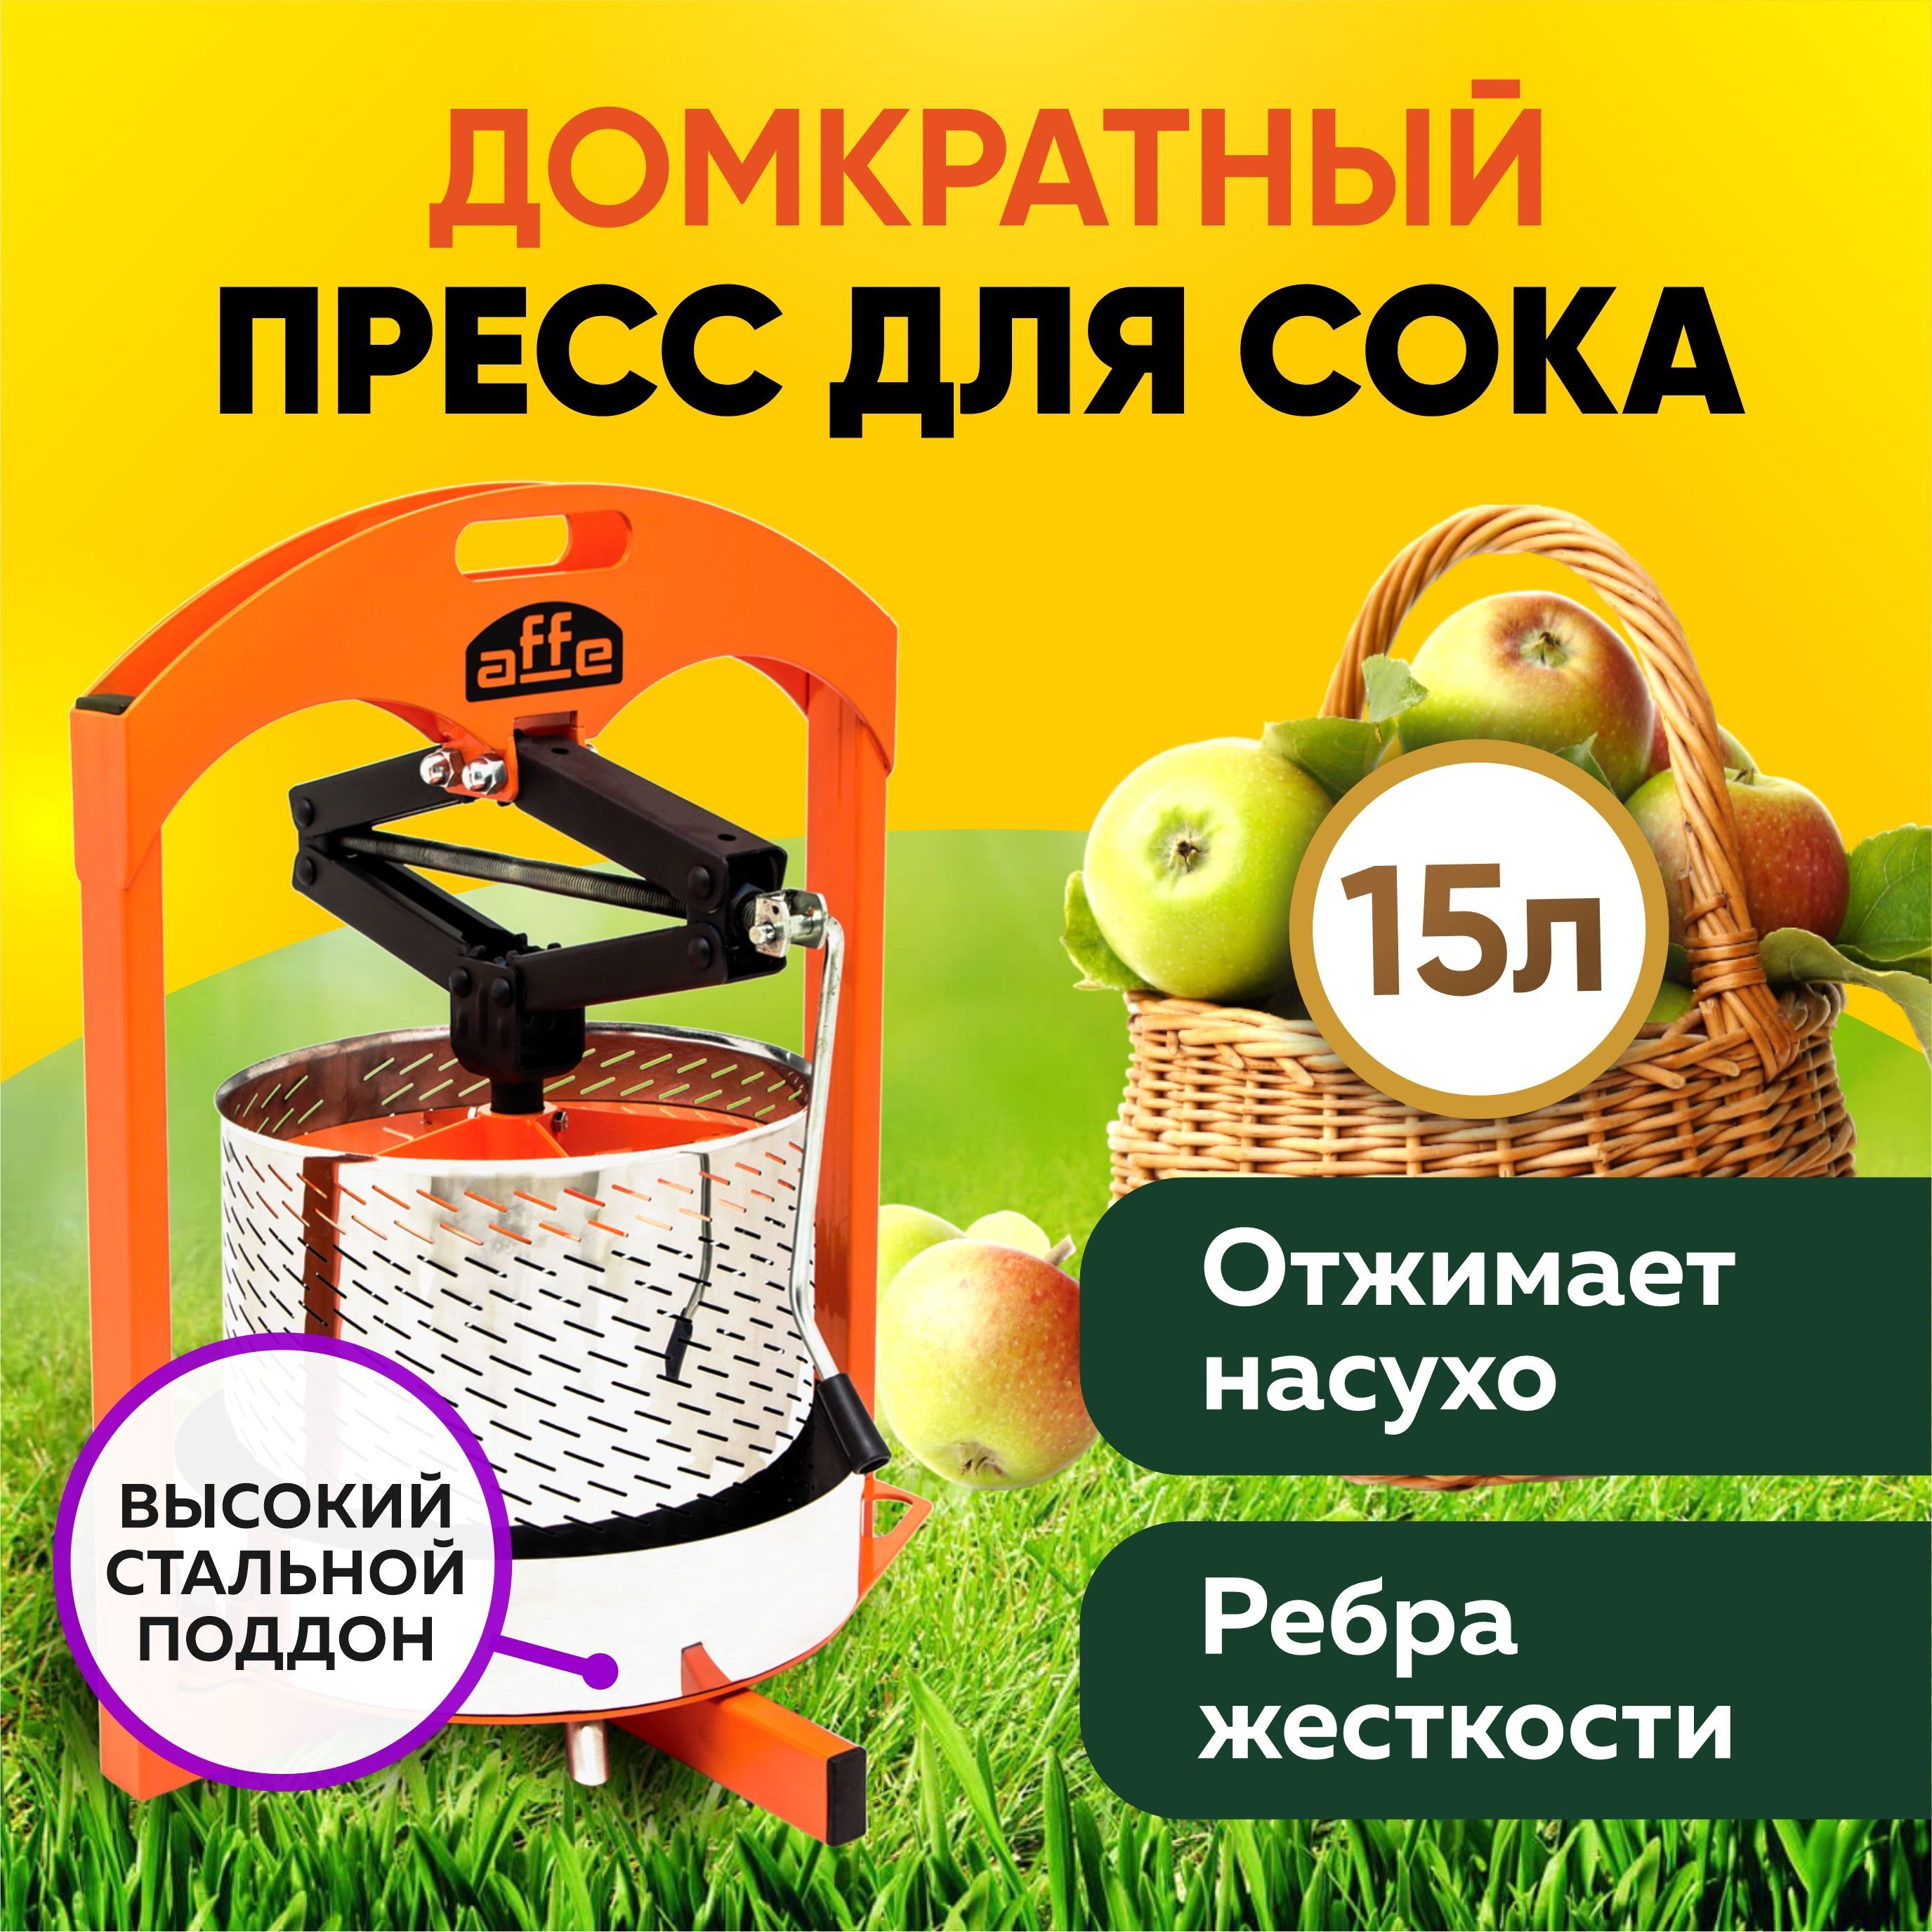 Купить пресс для сока в Украине.